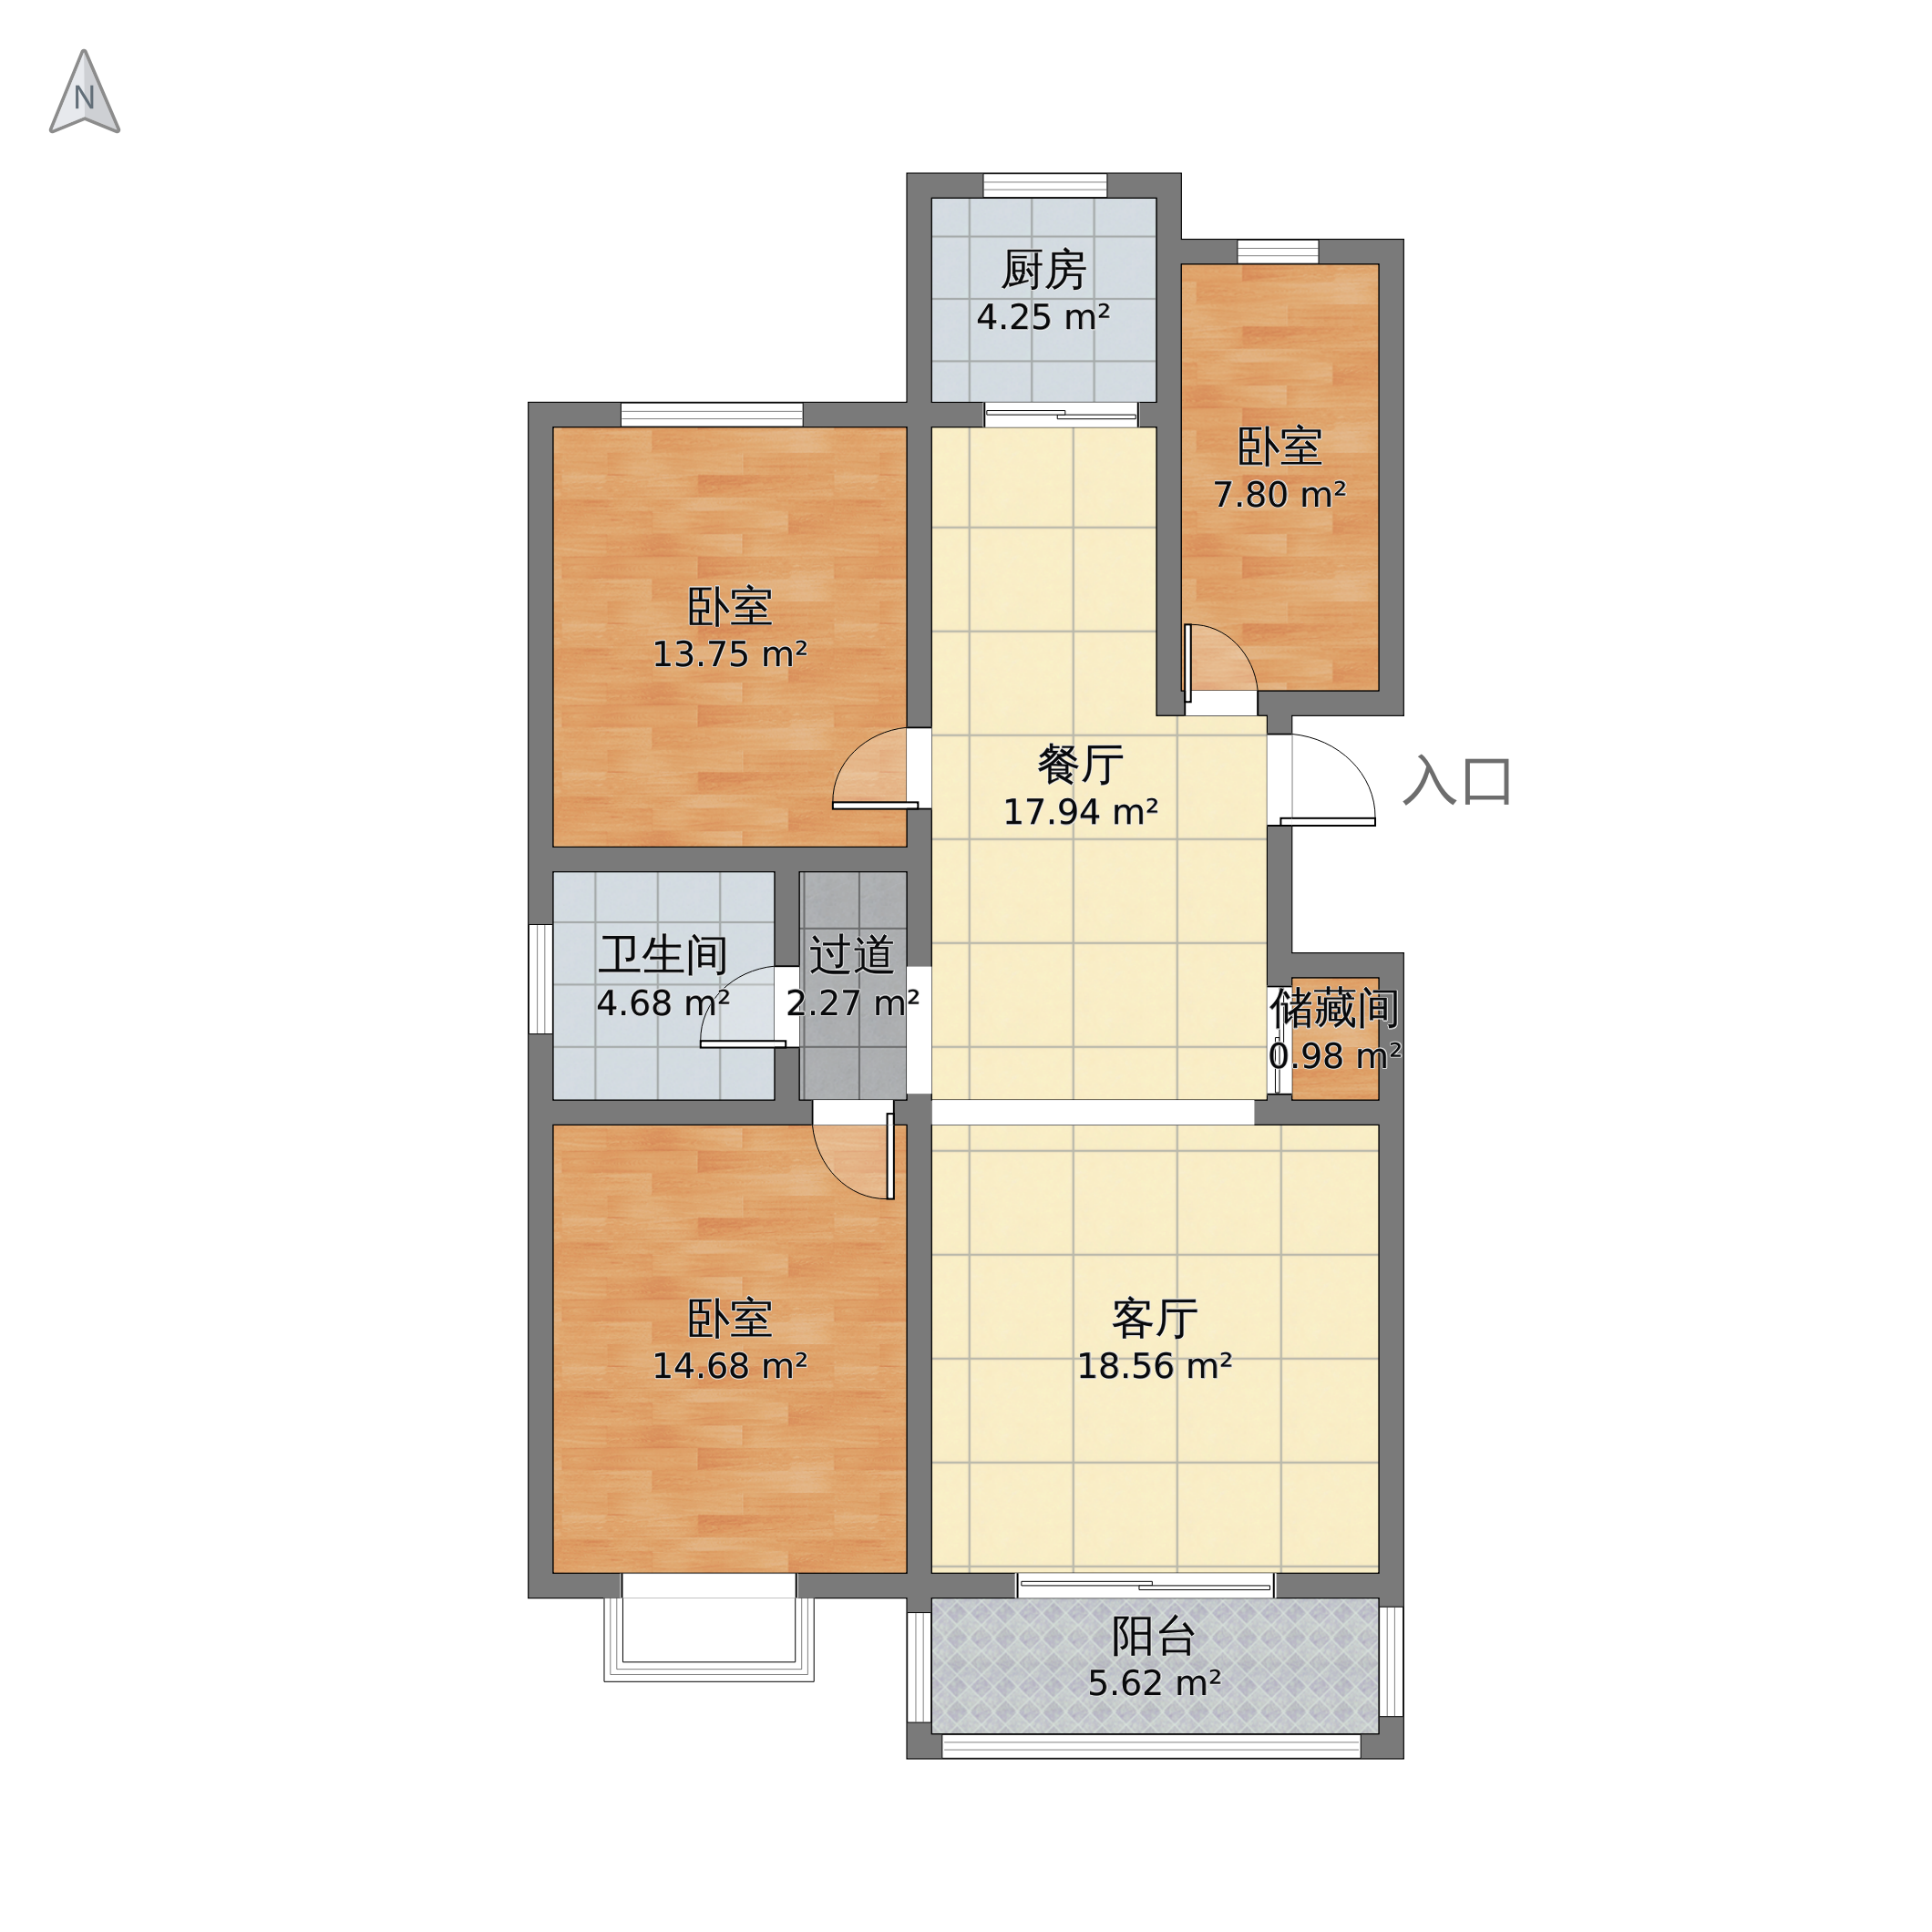 山西省长治市郊区 南都新城3室2厅1卫 117m05-v2户型图 小区户型